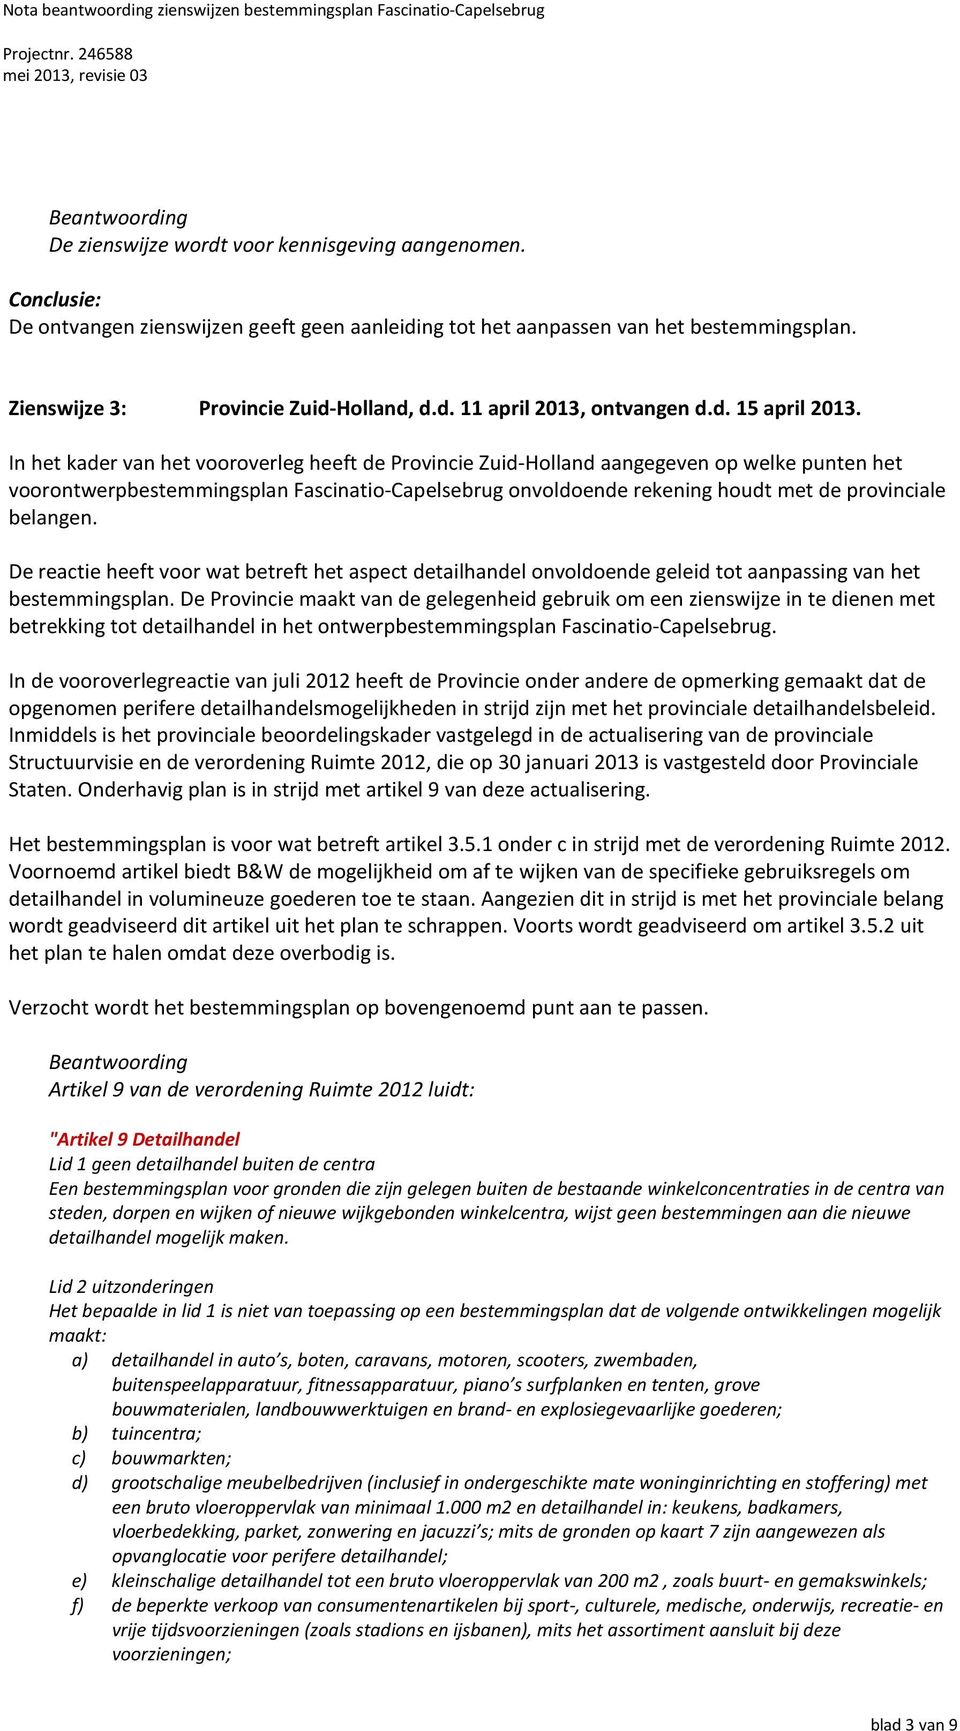 In het kader van het vooroverleg heeft de Provincie Zuid-Holland aangegeven op welke punten het voorontwerpbestemmingsplan Fascinatio-Capelsebrug onvoldoende rekening houdt met de provinciale